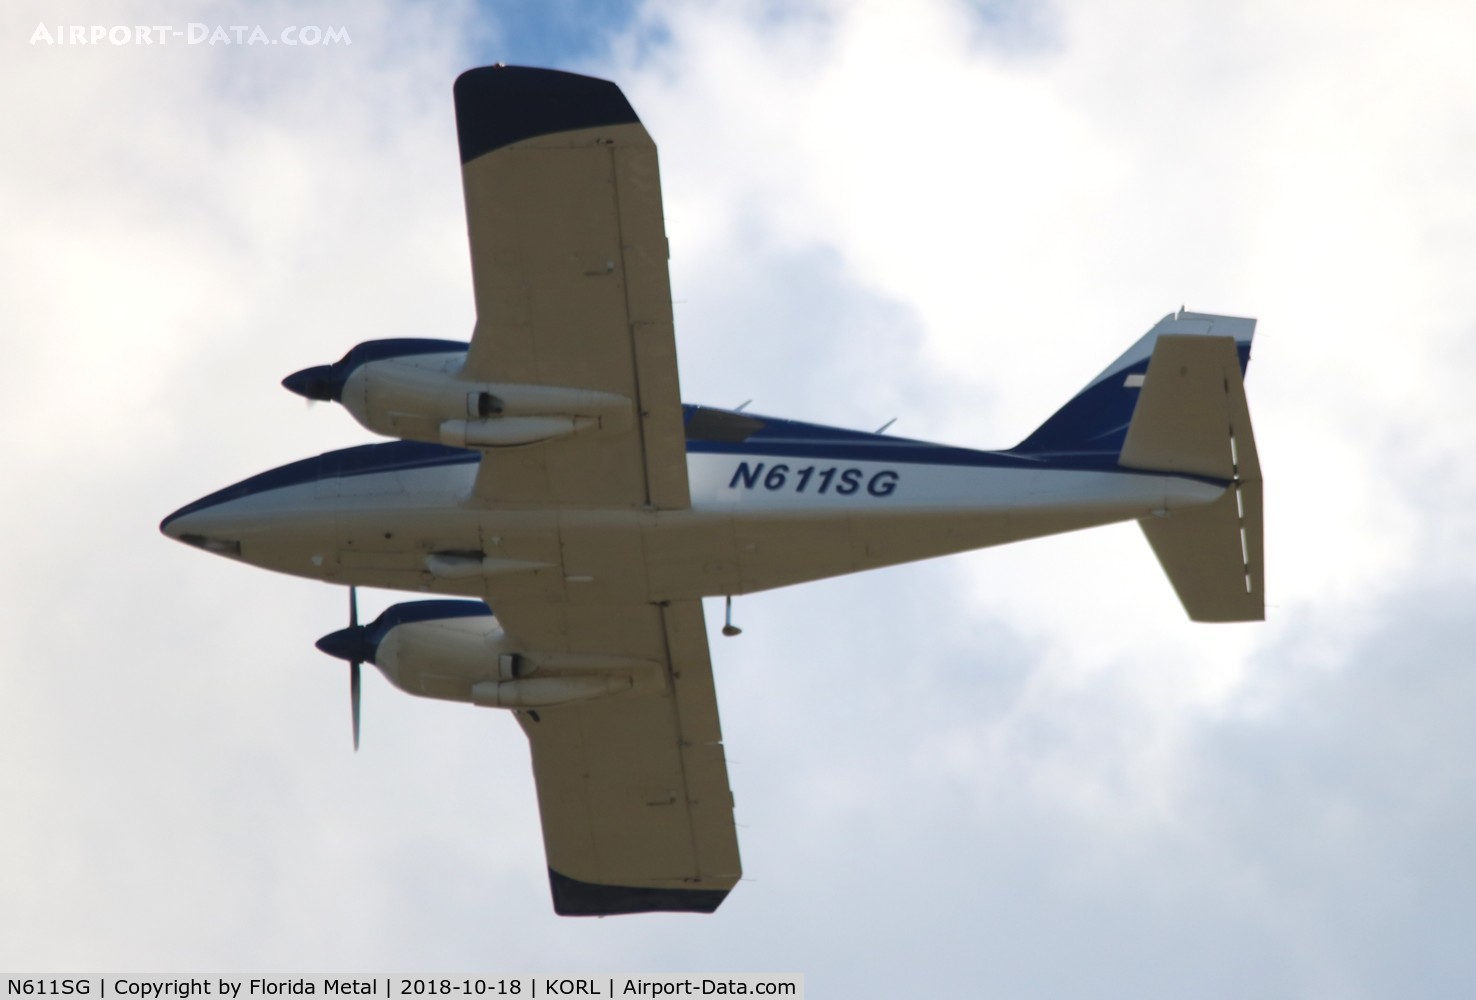 N611SG, 1979 Piper PA-23-250 C/N 27-8054020, NBAA 2018